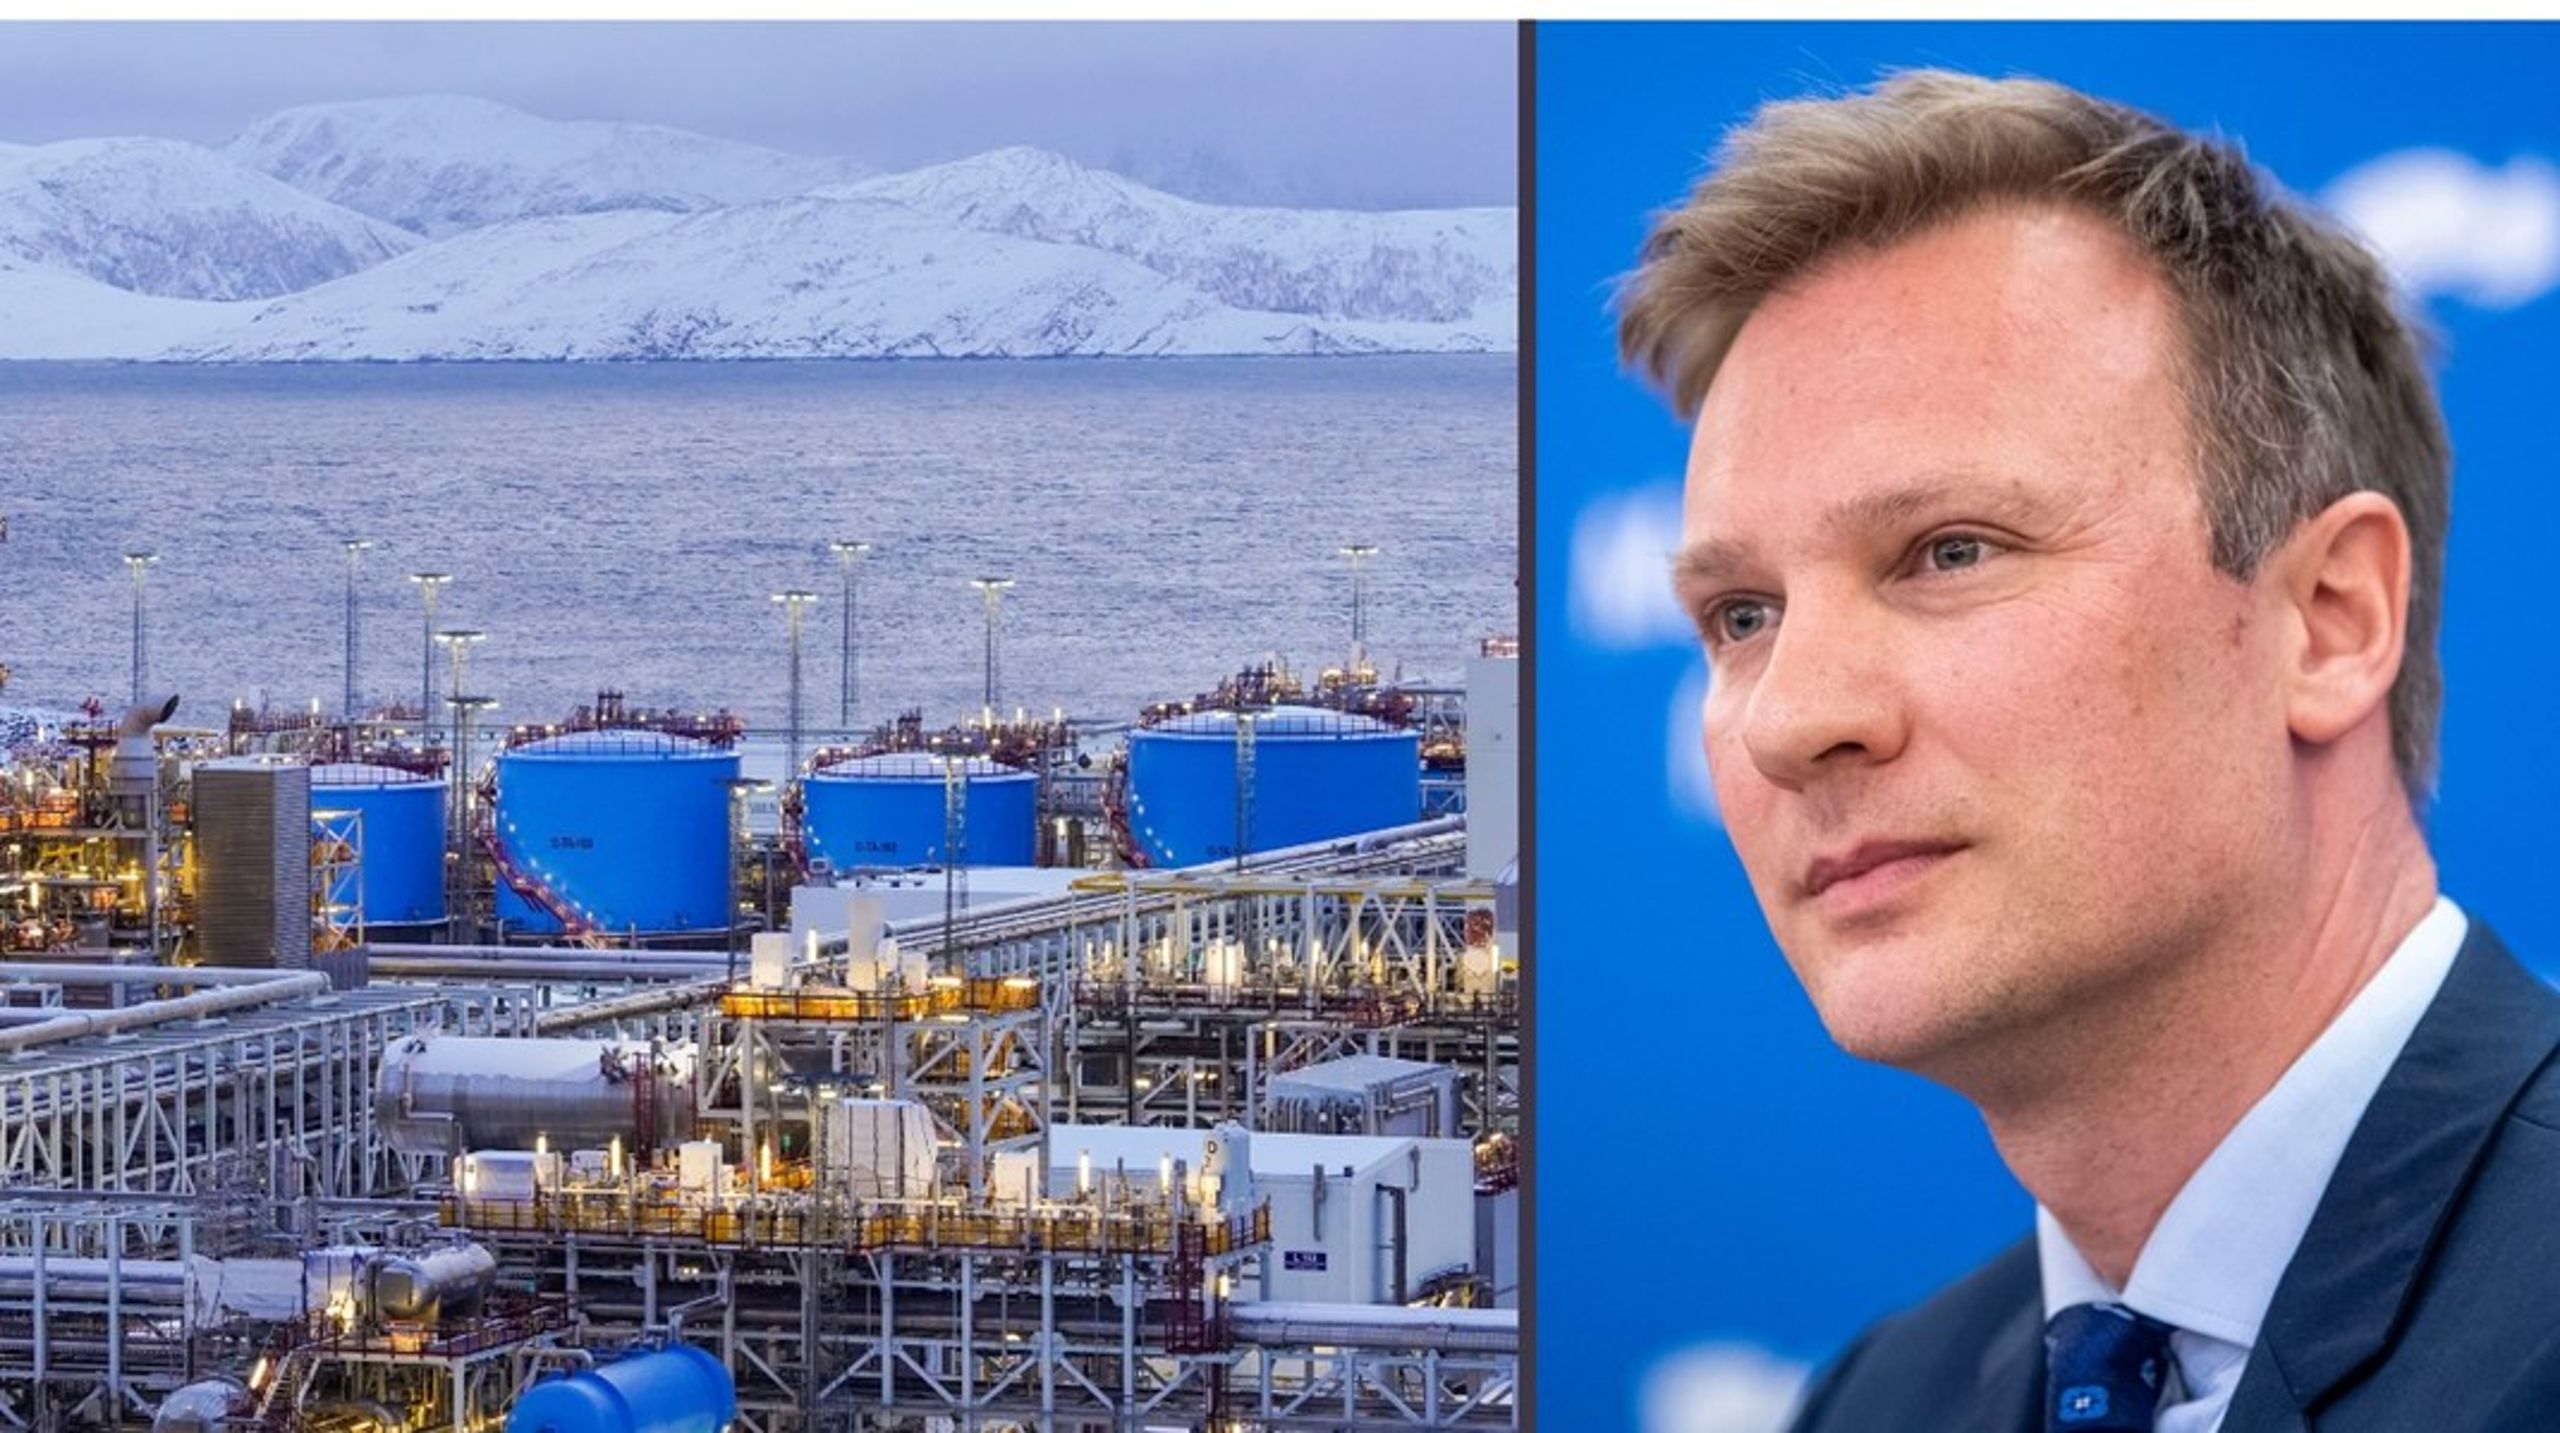 Langsiktig energipolitikk lønner seg, selv om premissene endres underveis, skriver spaltist og stortingsrepresentant Bård Ludvig Thorheim (H), og peker blant annet på Melkøya og gassutvinning i Barentshavet som et eksempel.